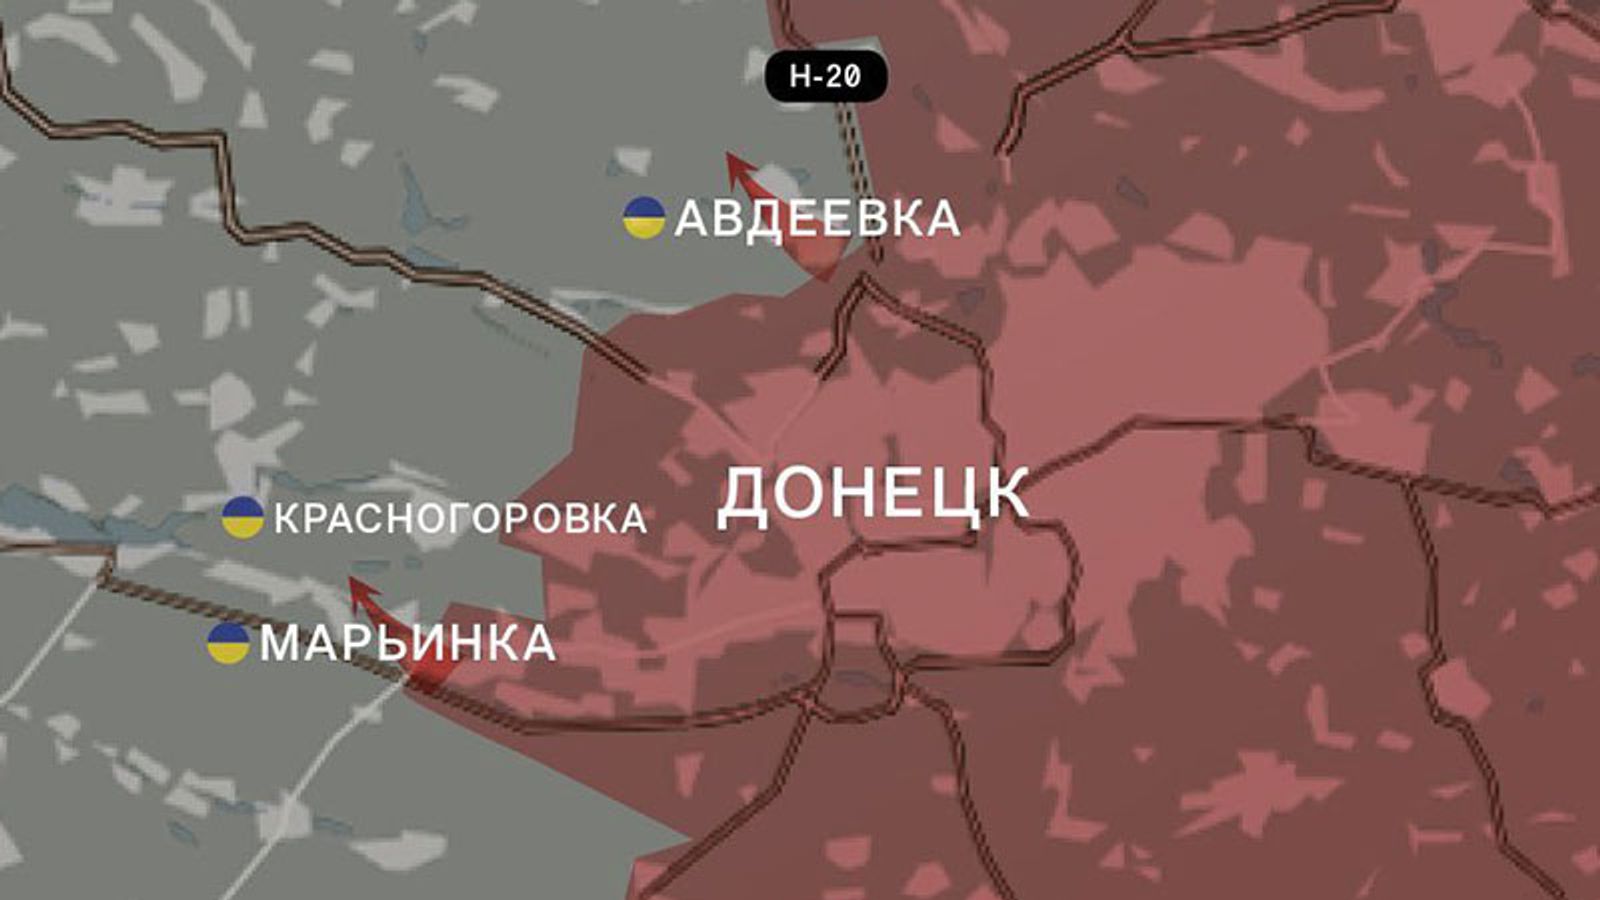  Десятки солдат РФ убиты в Токмаке, ВСУ готовит новое контрнаступление, Рогозин отправил осколок снаряда Макрону. Что происходит на фронте